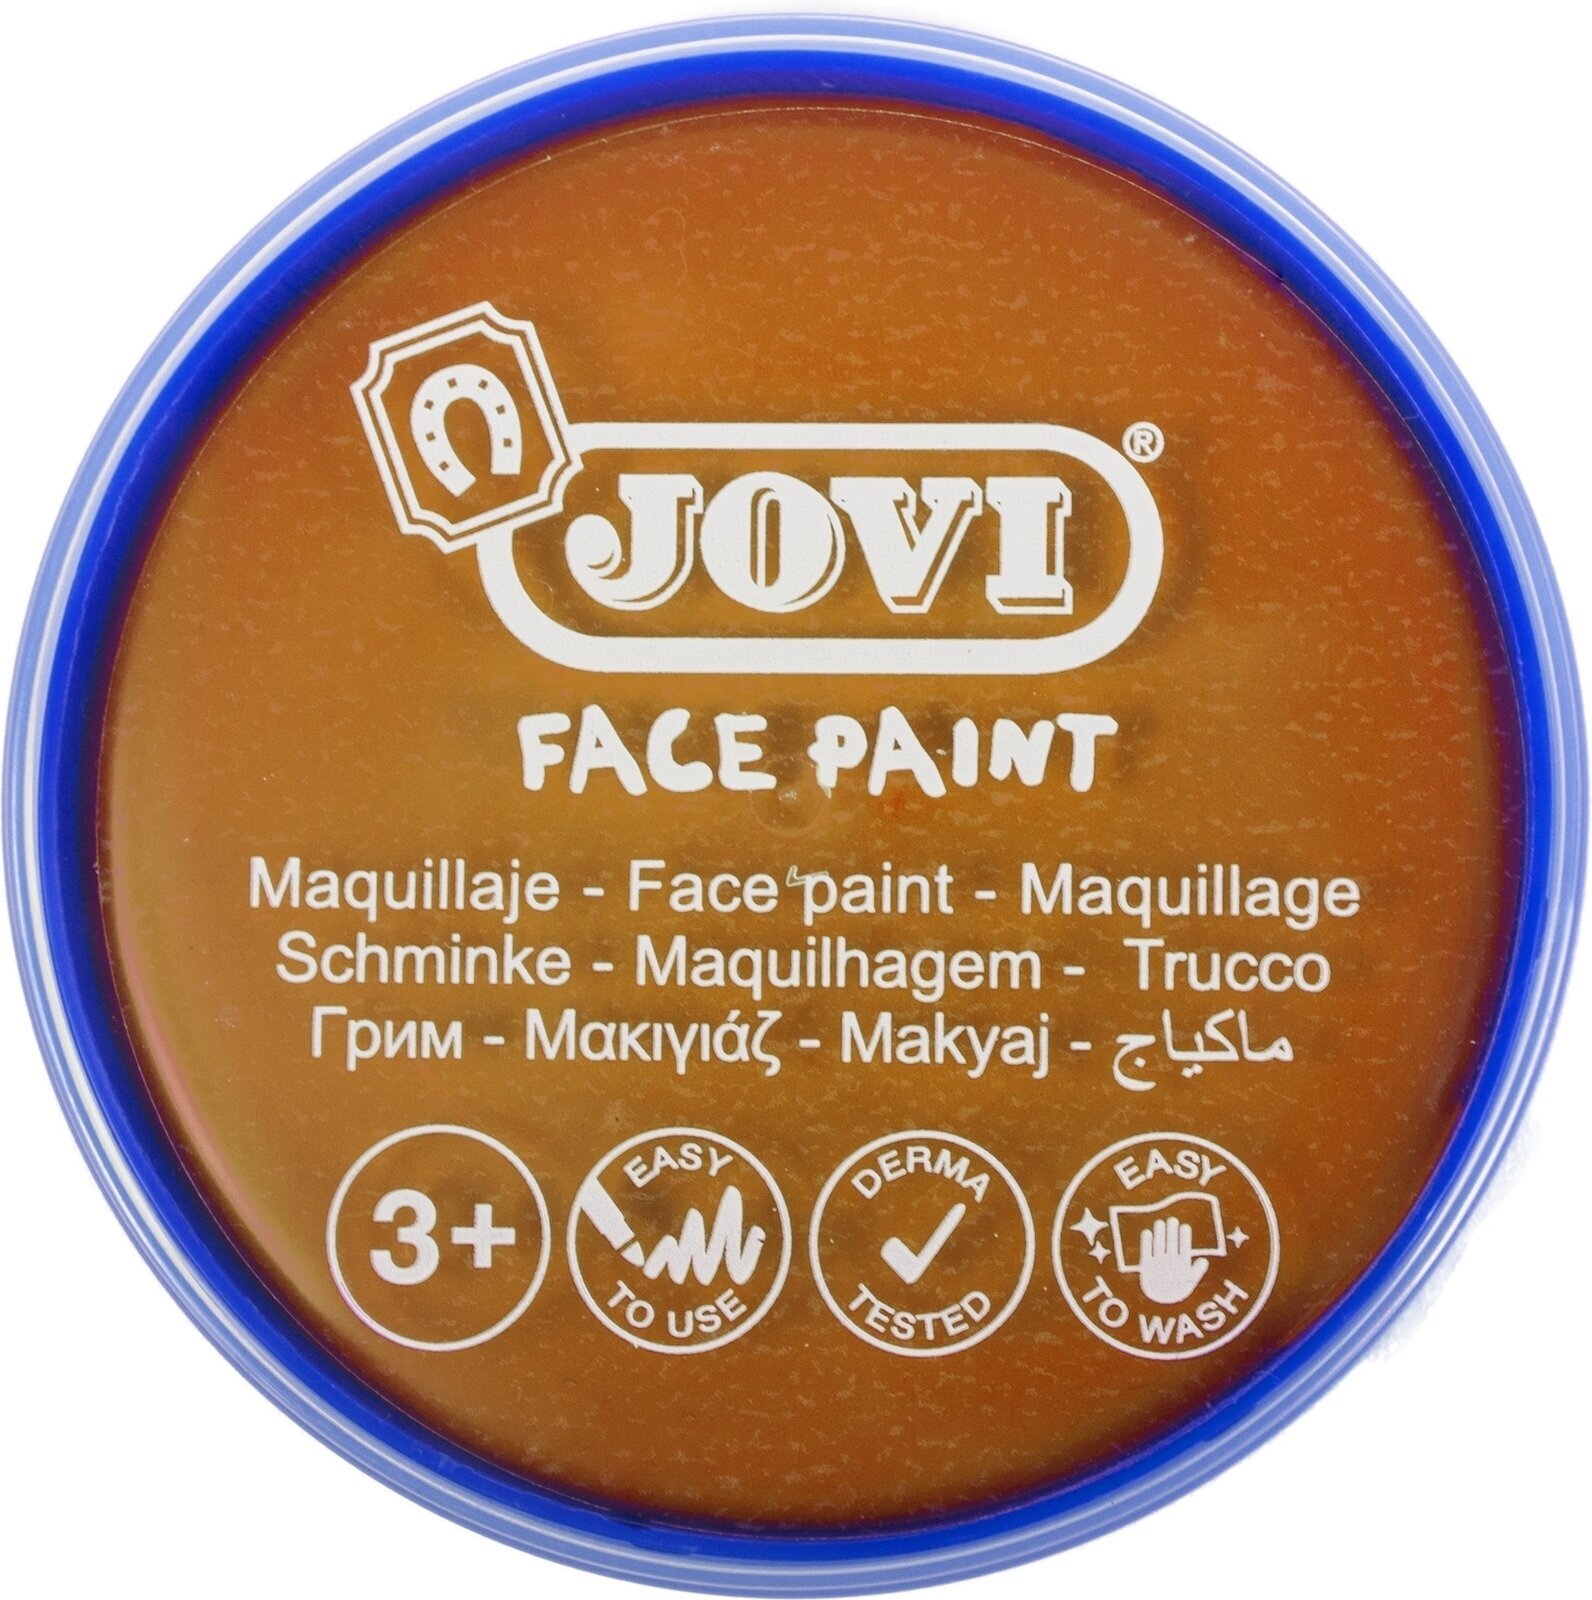 Face Paint Jovi Face Paint Orange 8 ml